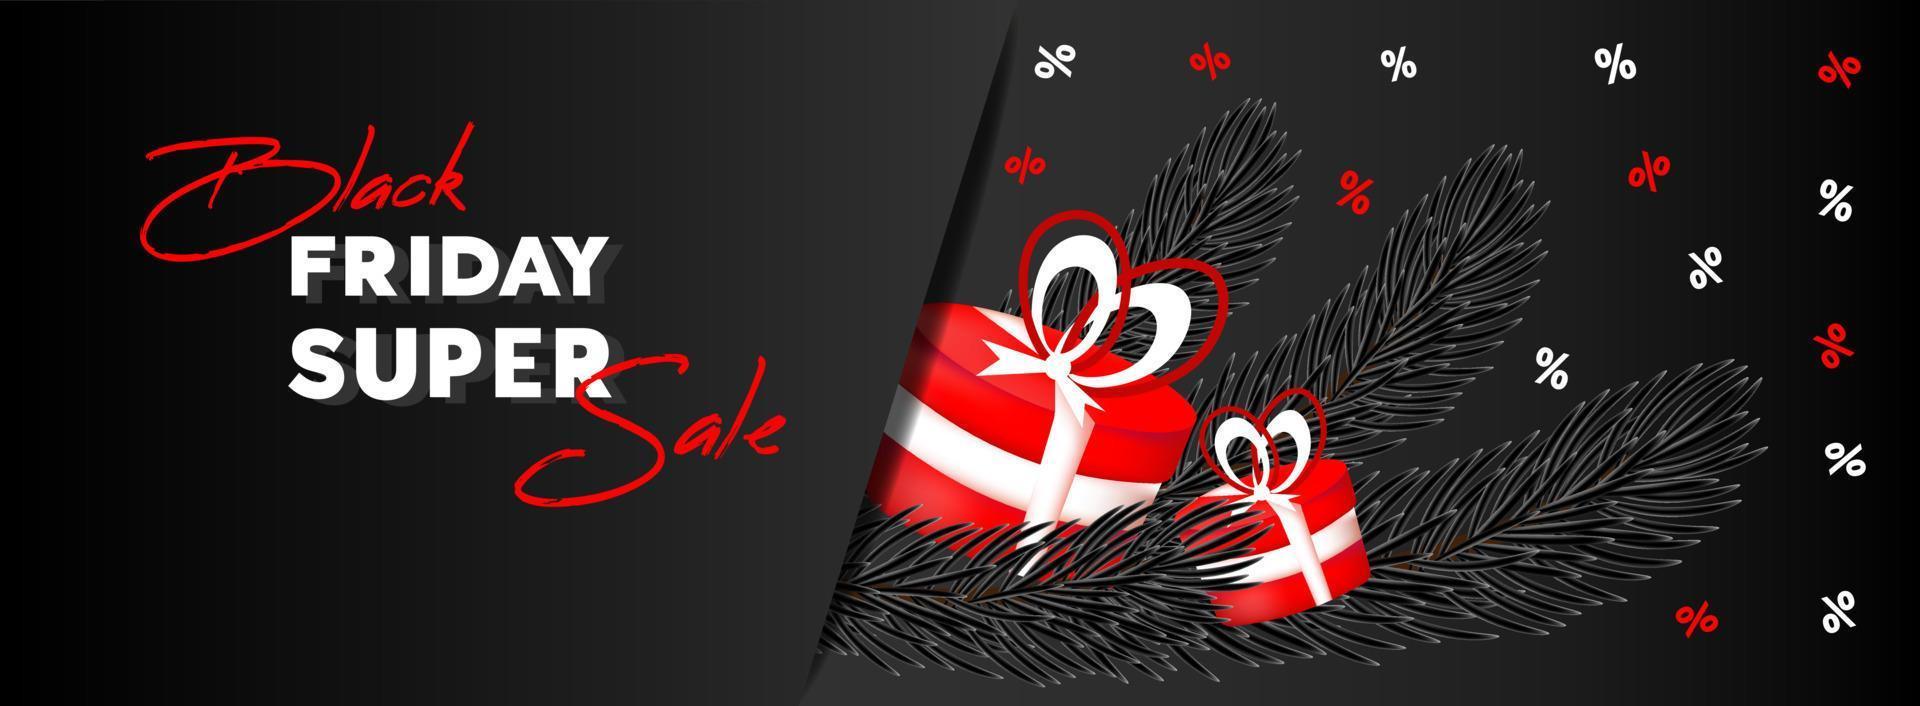 schwarzer Freitag. Verkaufsbanner, Flyer. Text, Weihnachtsbaumzweige und rote Geschenkboxen auf schwarzem Hintergrund. vektor